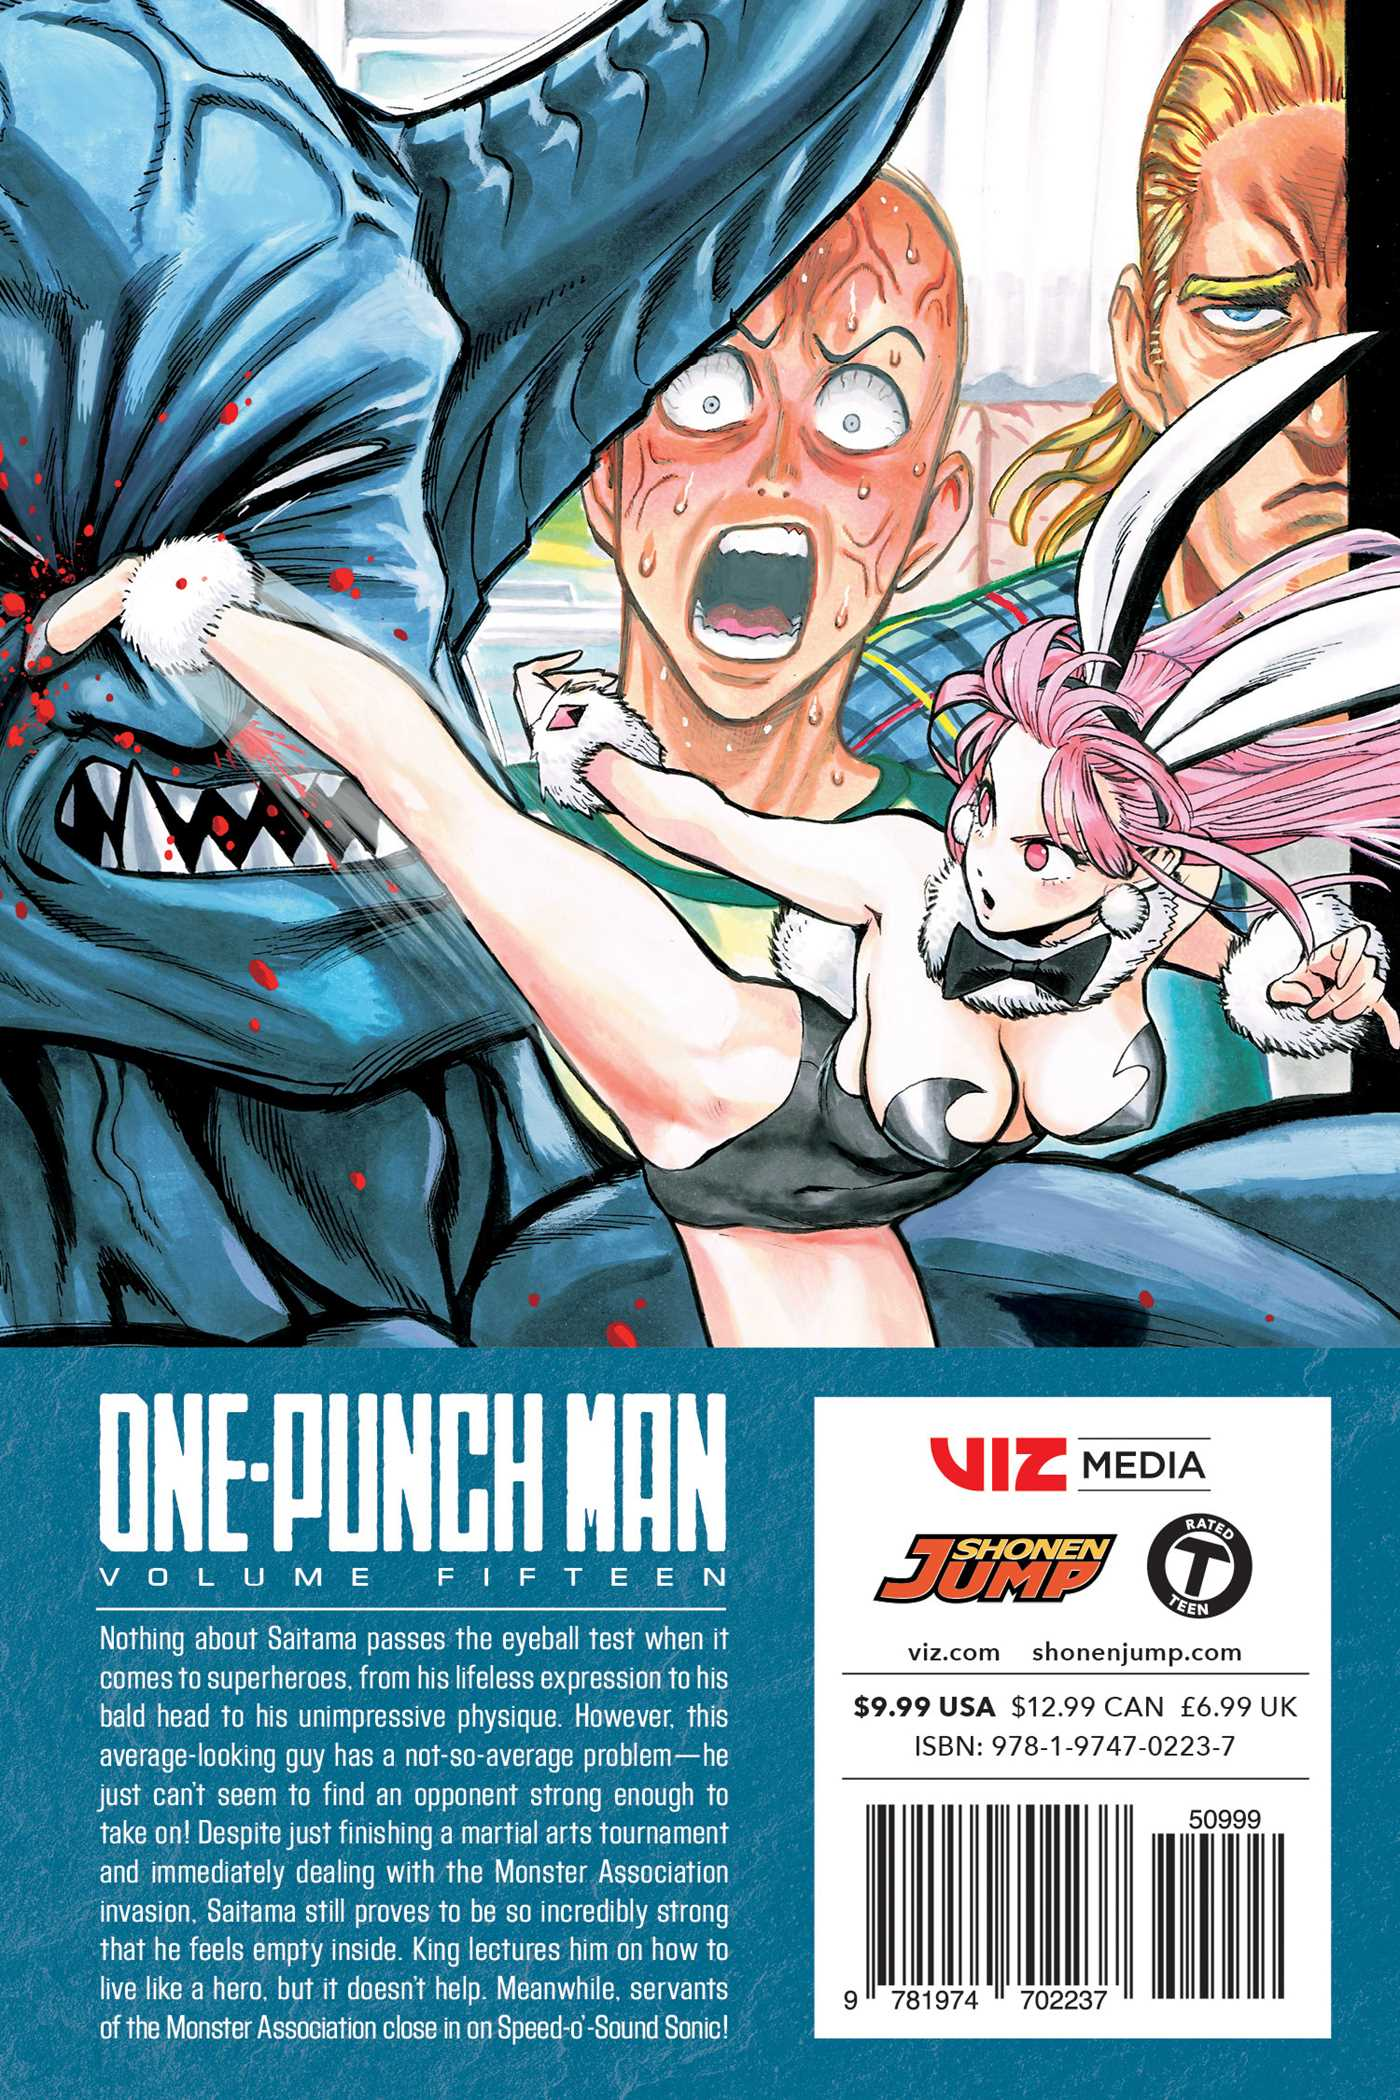 Volume 15 One Punch Man Wiki Fandom